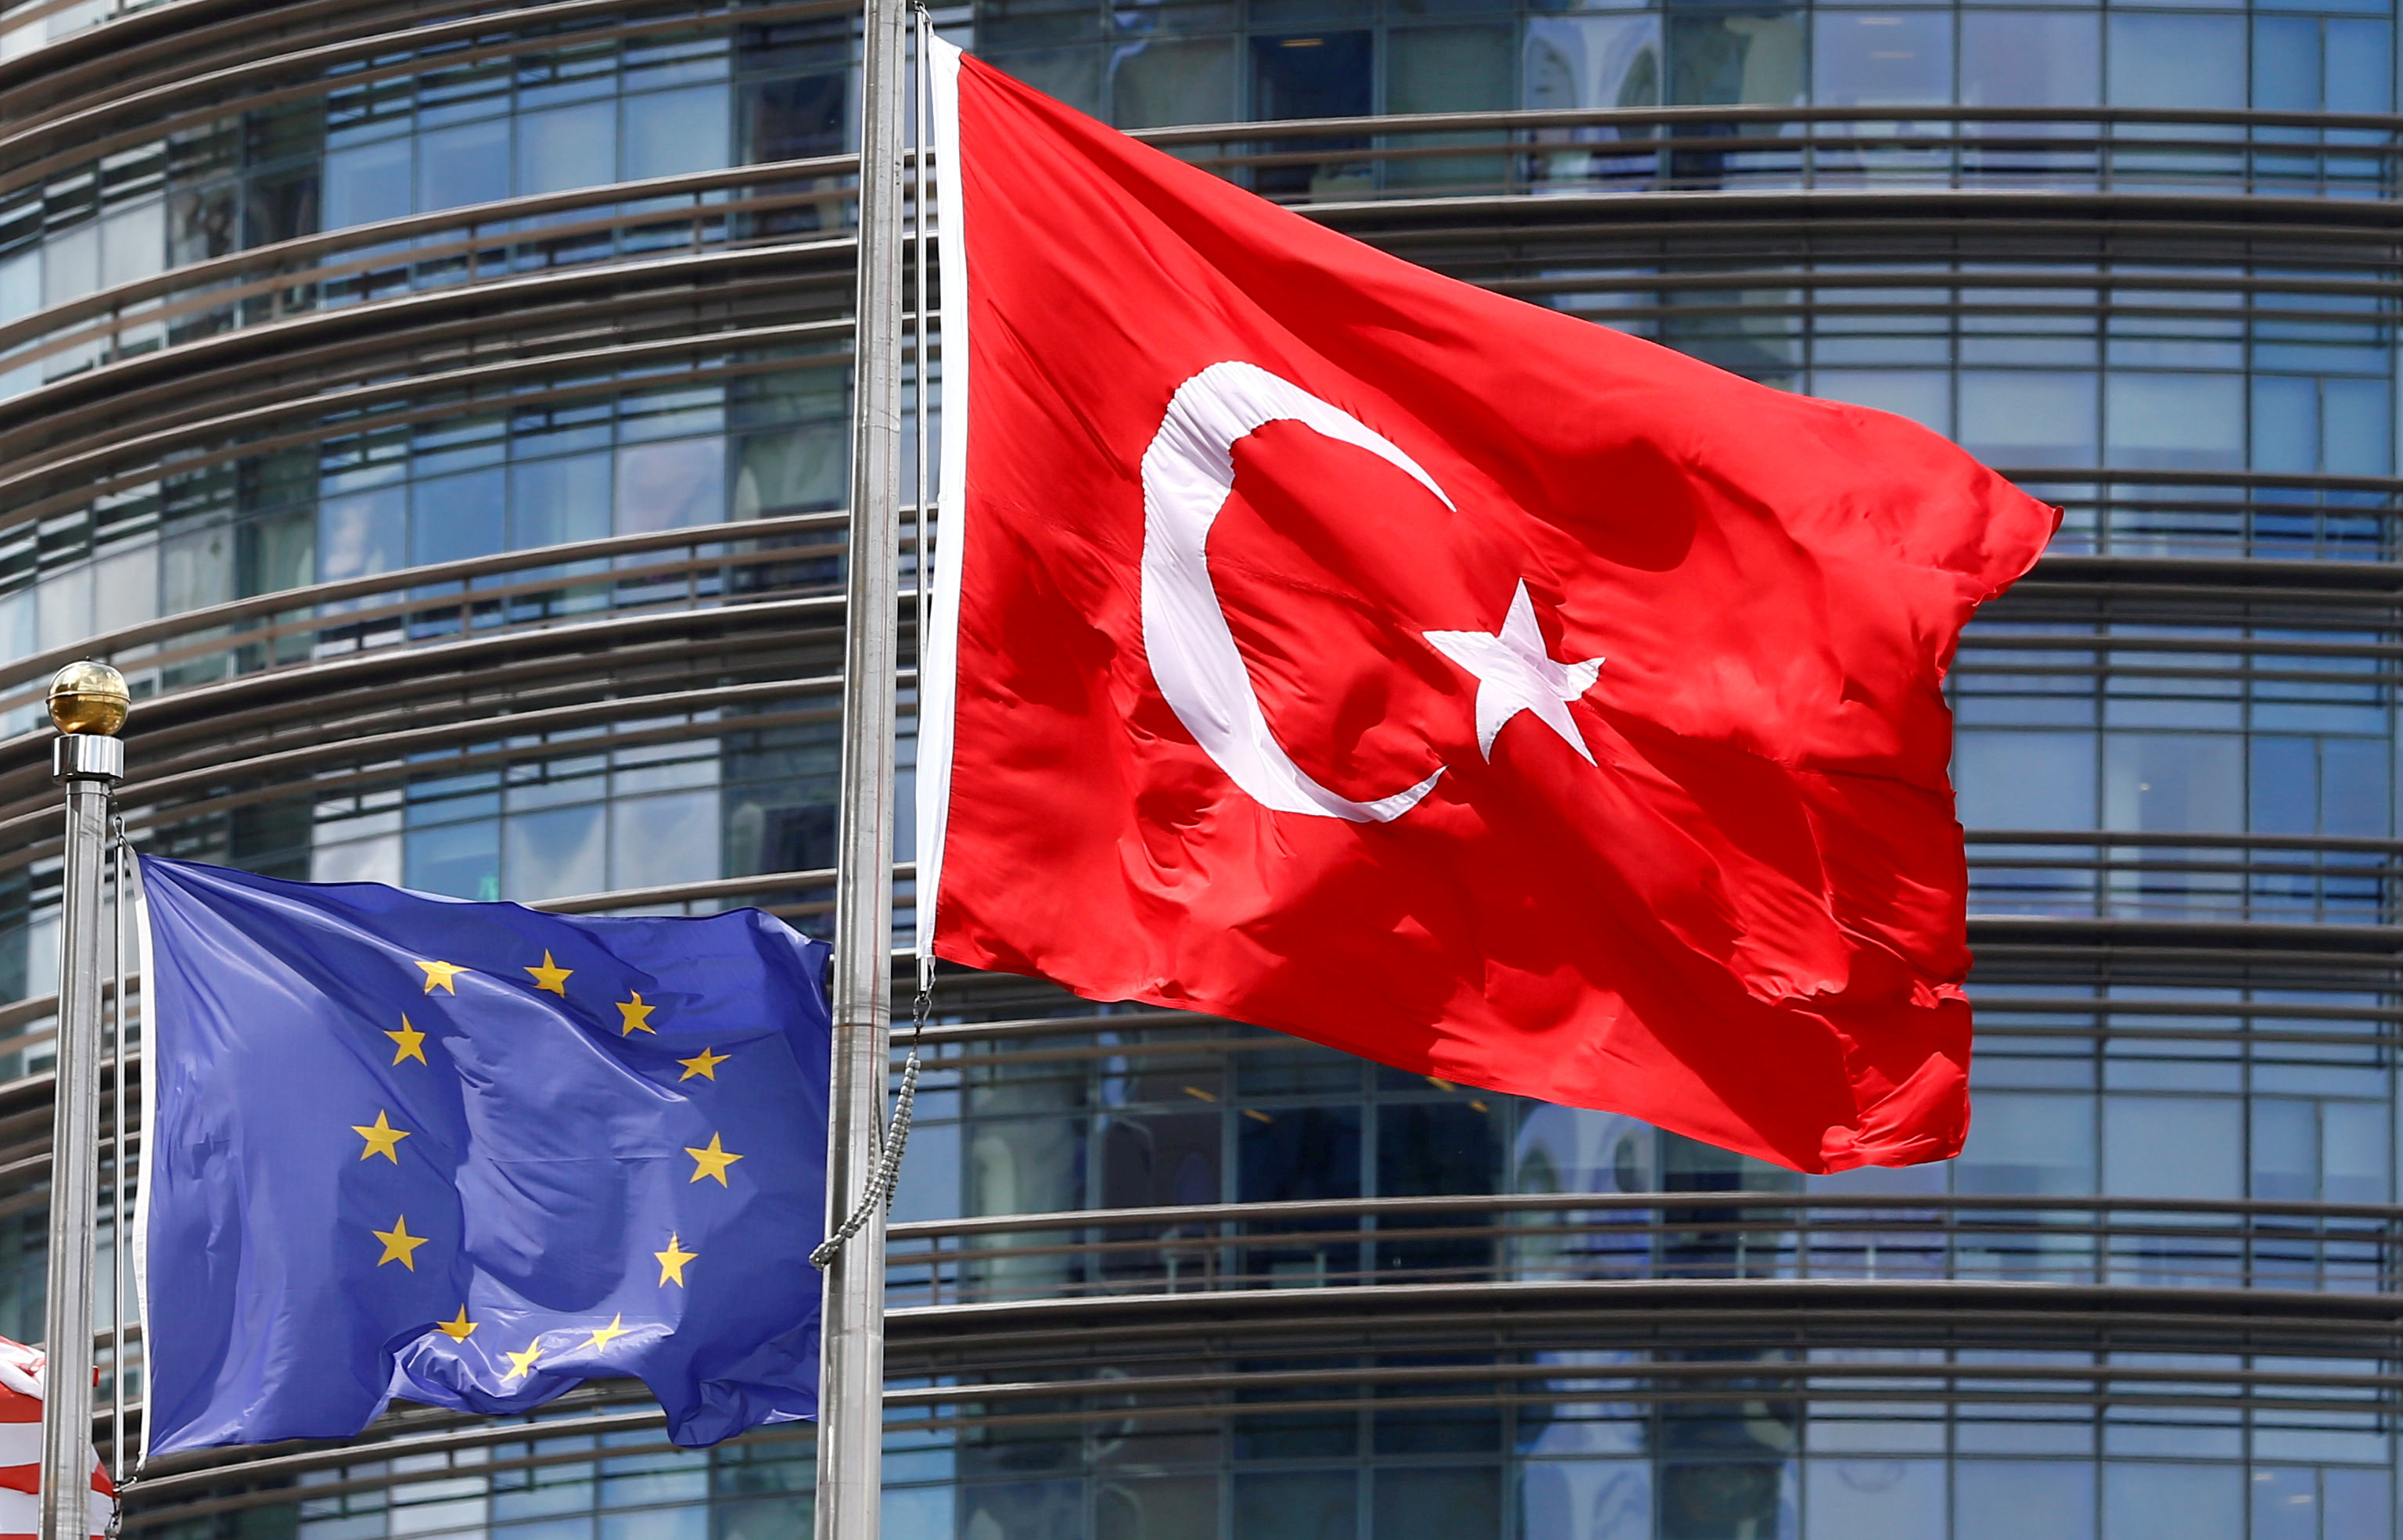 Κομισιόν: Να δεσμευτεί η Τουρκία για σχέσεις καλής γειτονίας